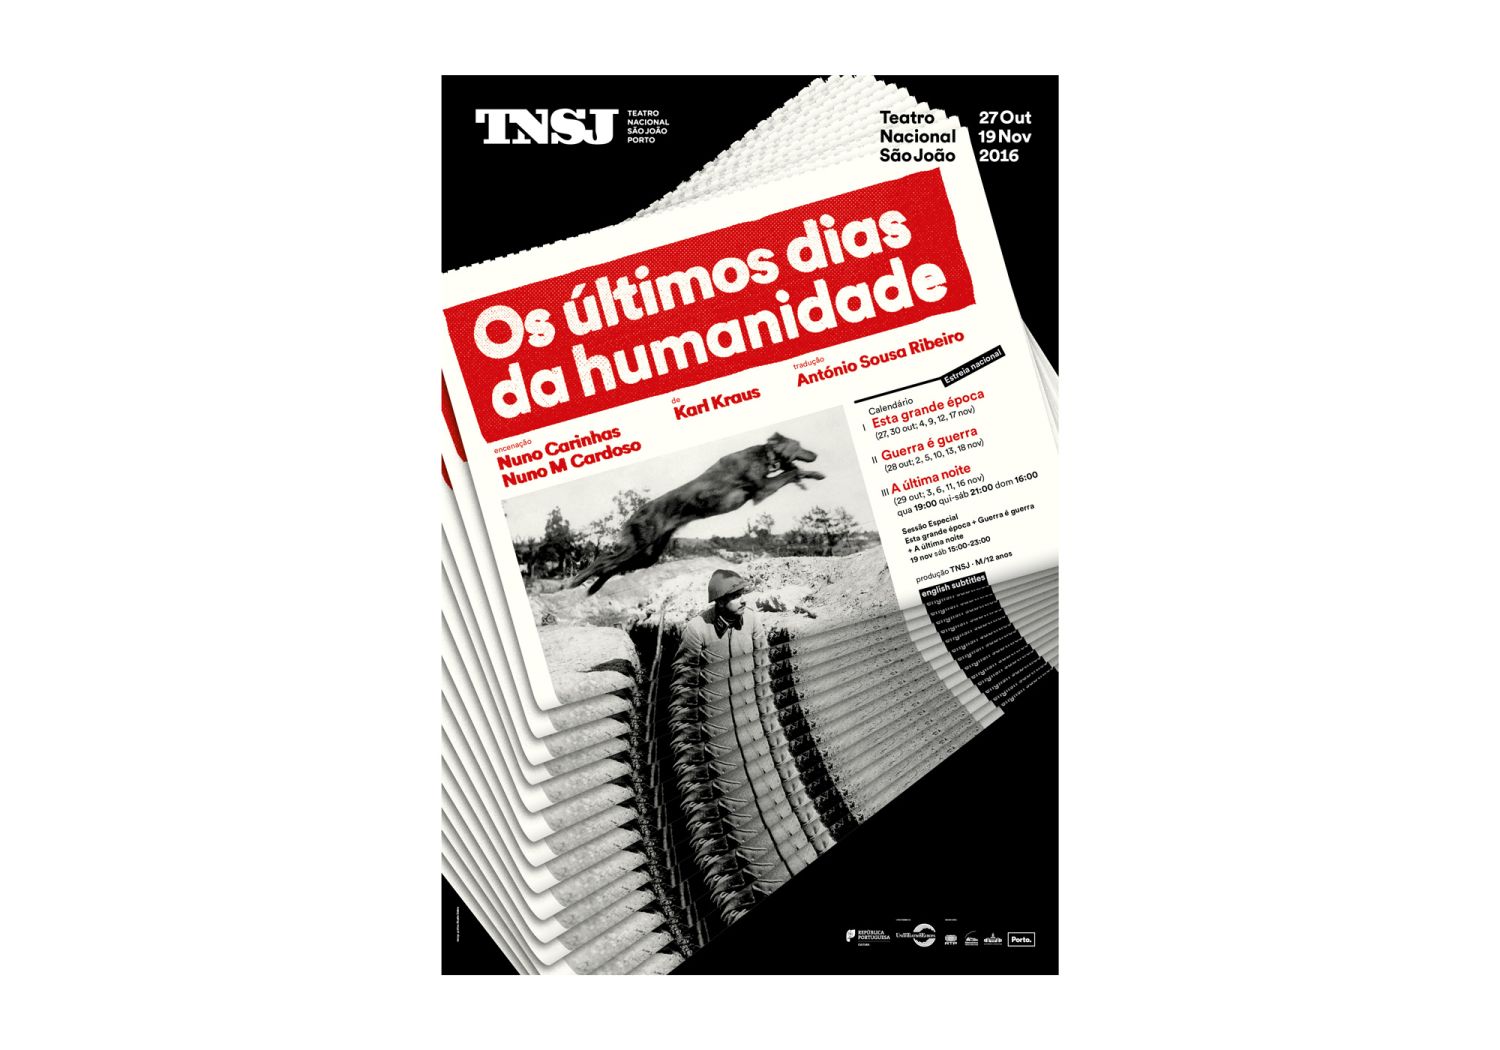 São João National Theatre Posters 2015-2016 Image:1 dobra-tnsj-Humanidade